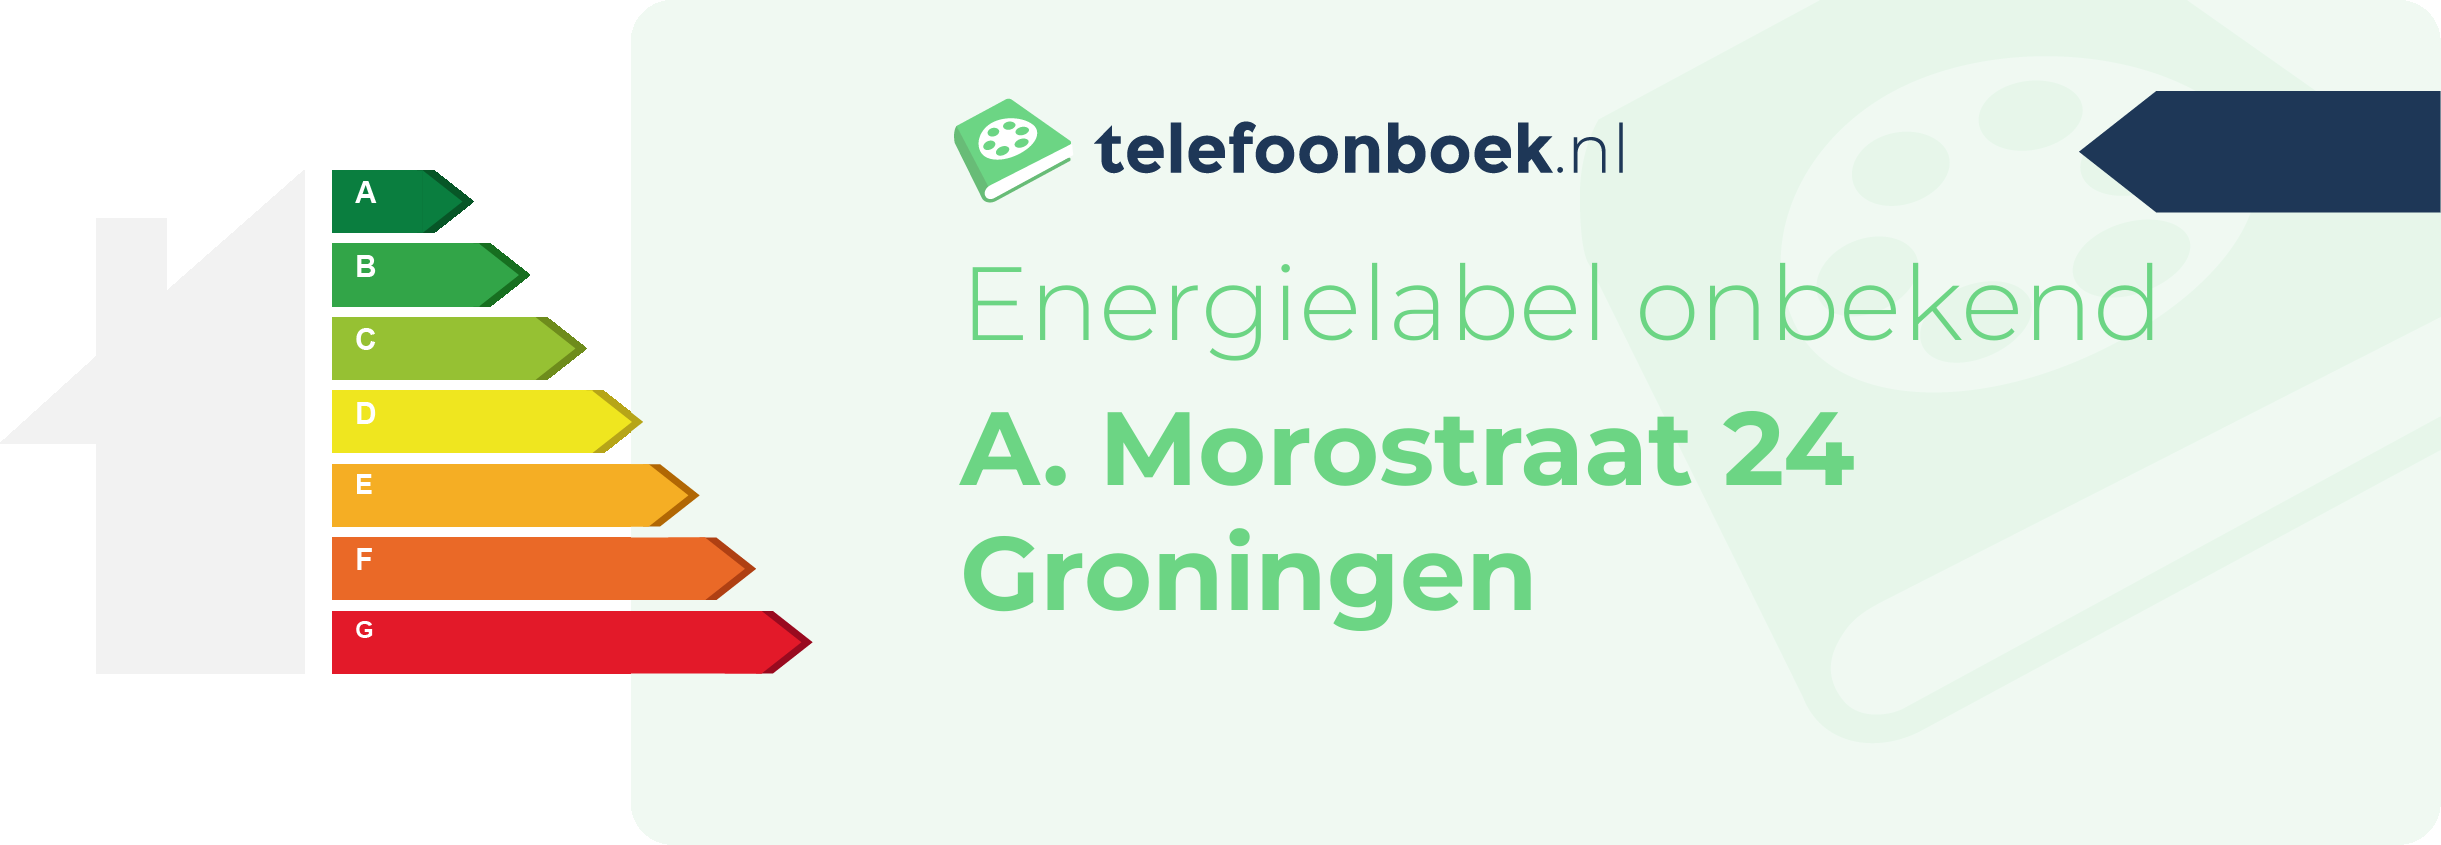 Energielabel A. Morostraat 24 Groningen